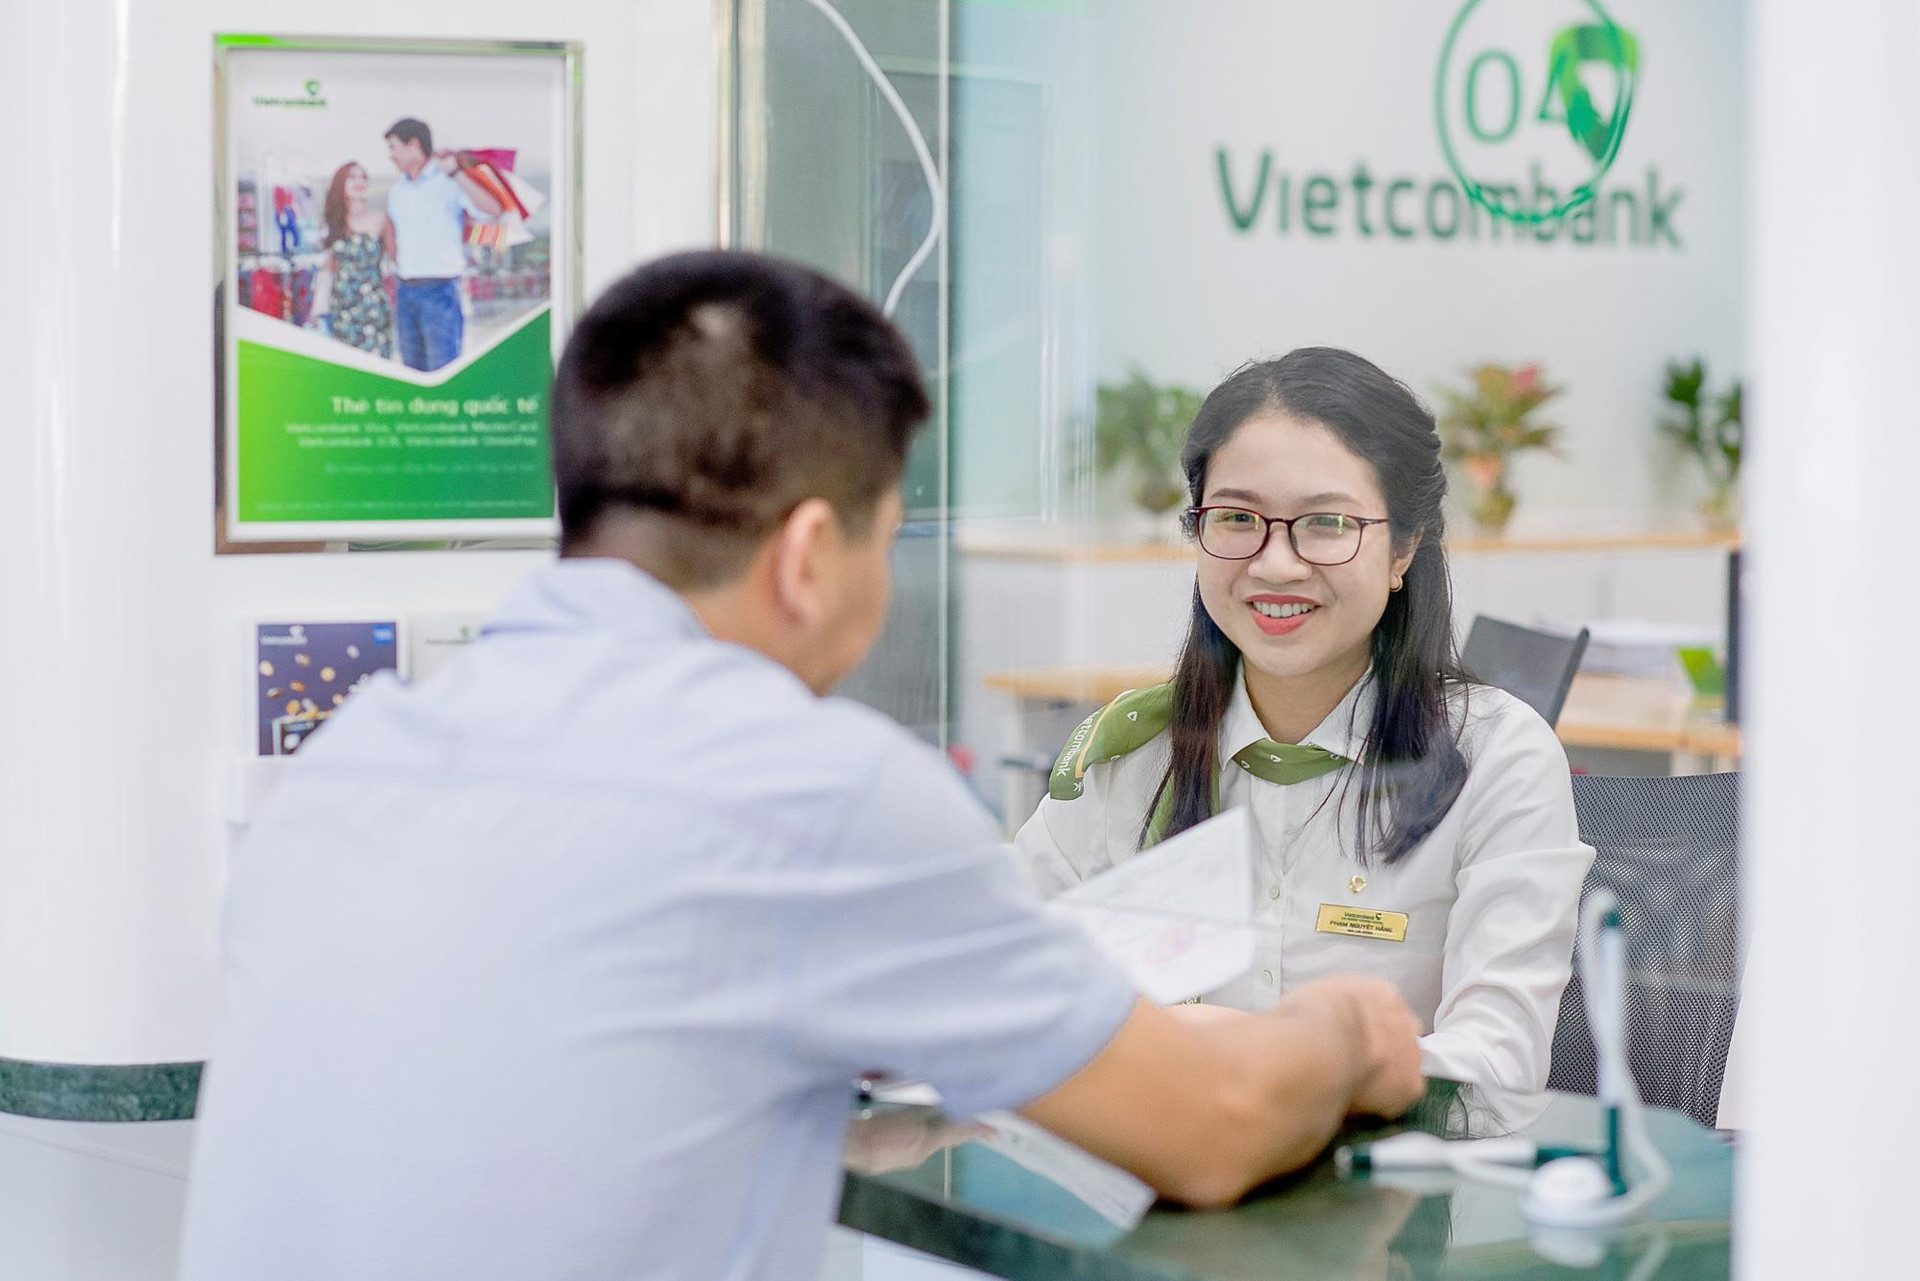 Ngân hàng lớn nhất Việt Nam vừa chứng kiến cảnh 4 năm mới có 1 lần- Ảnh 1.